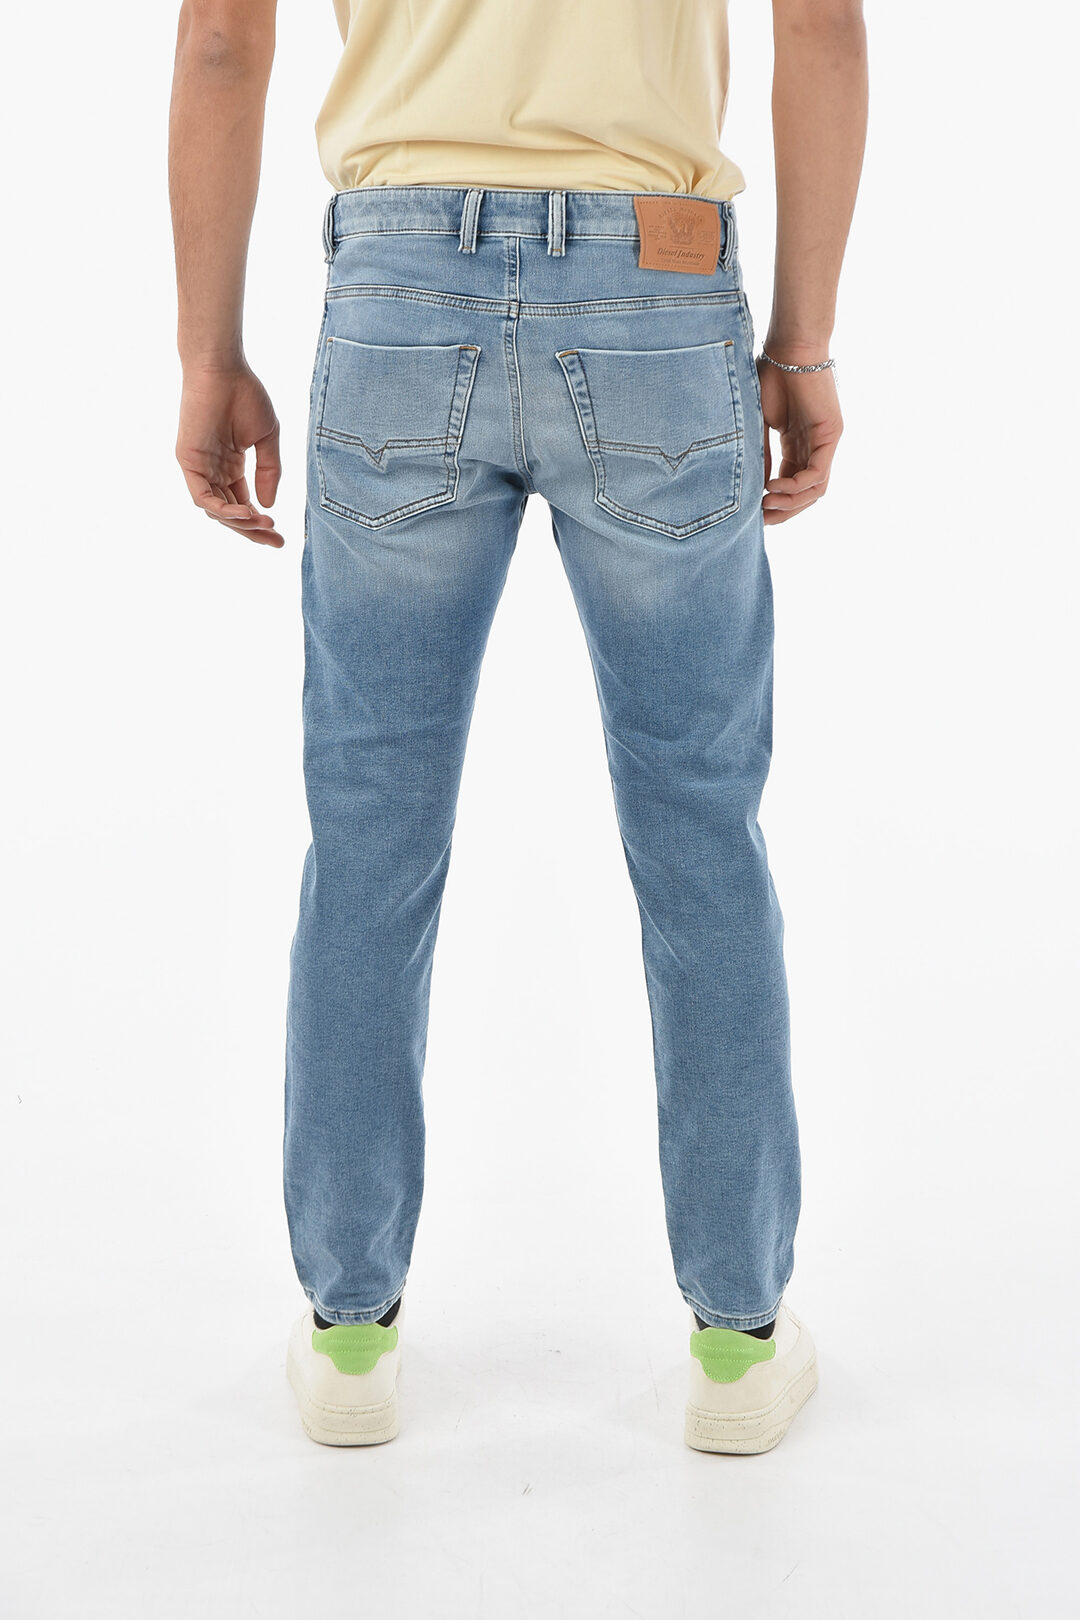 saai Verslinden Bestuurbaar Diesel Stretch Denim KROOLEY-Y-T Jogg Jeans 17cm L.32 men - Glamood Outlet